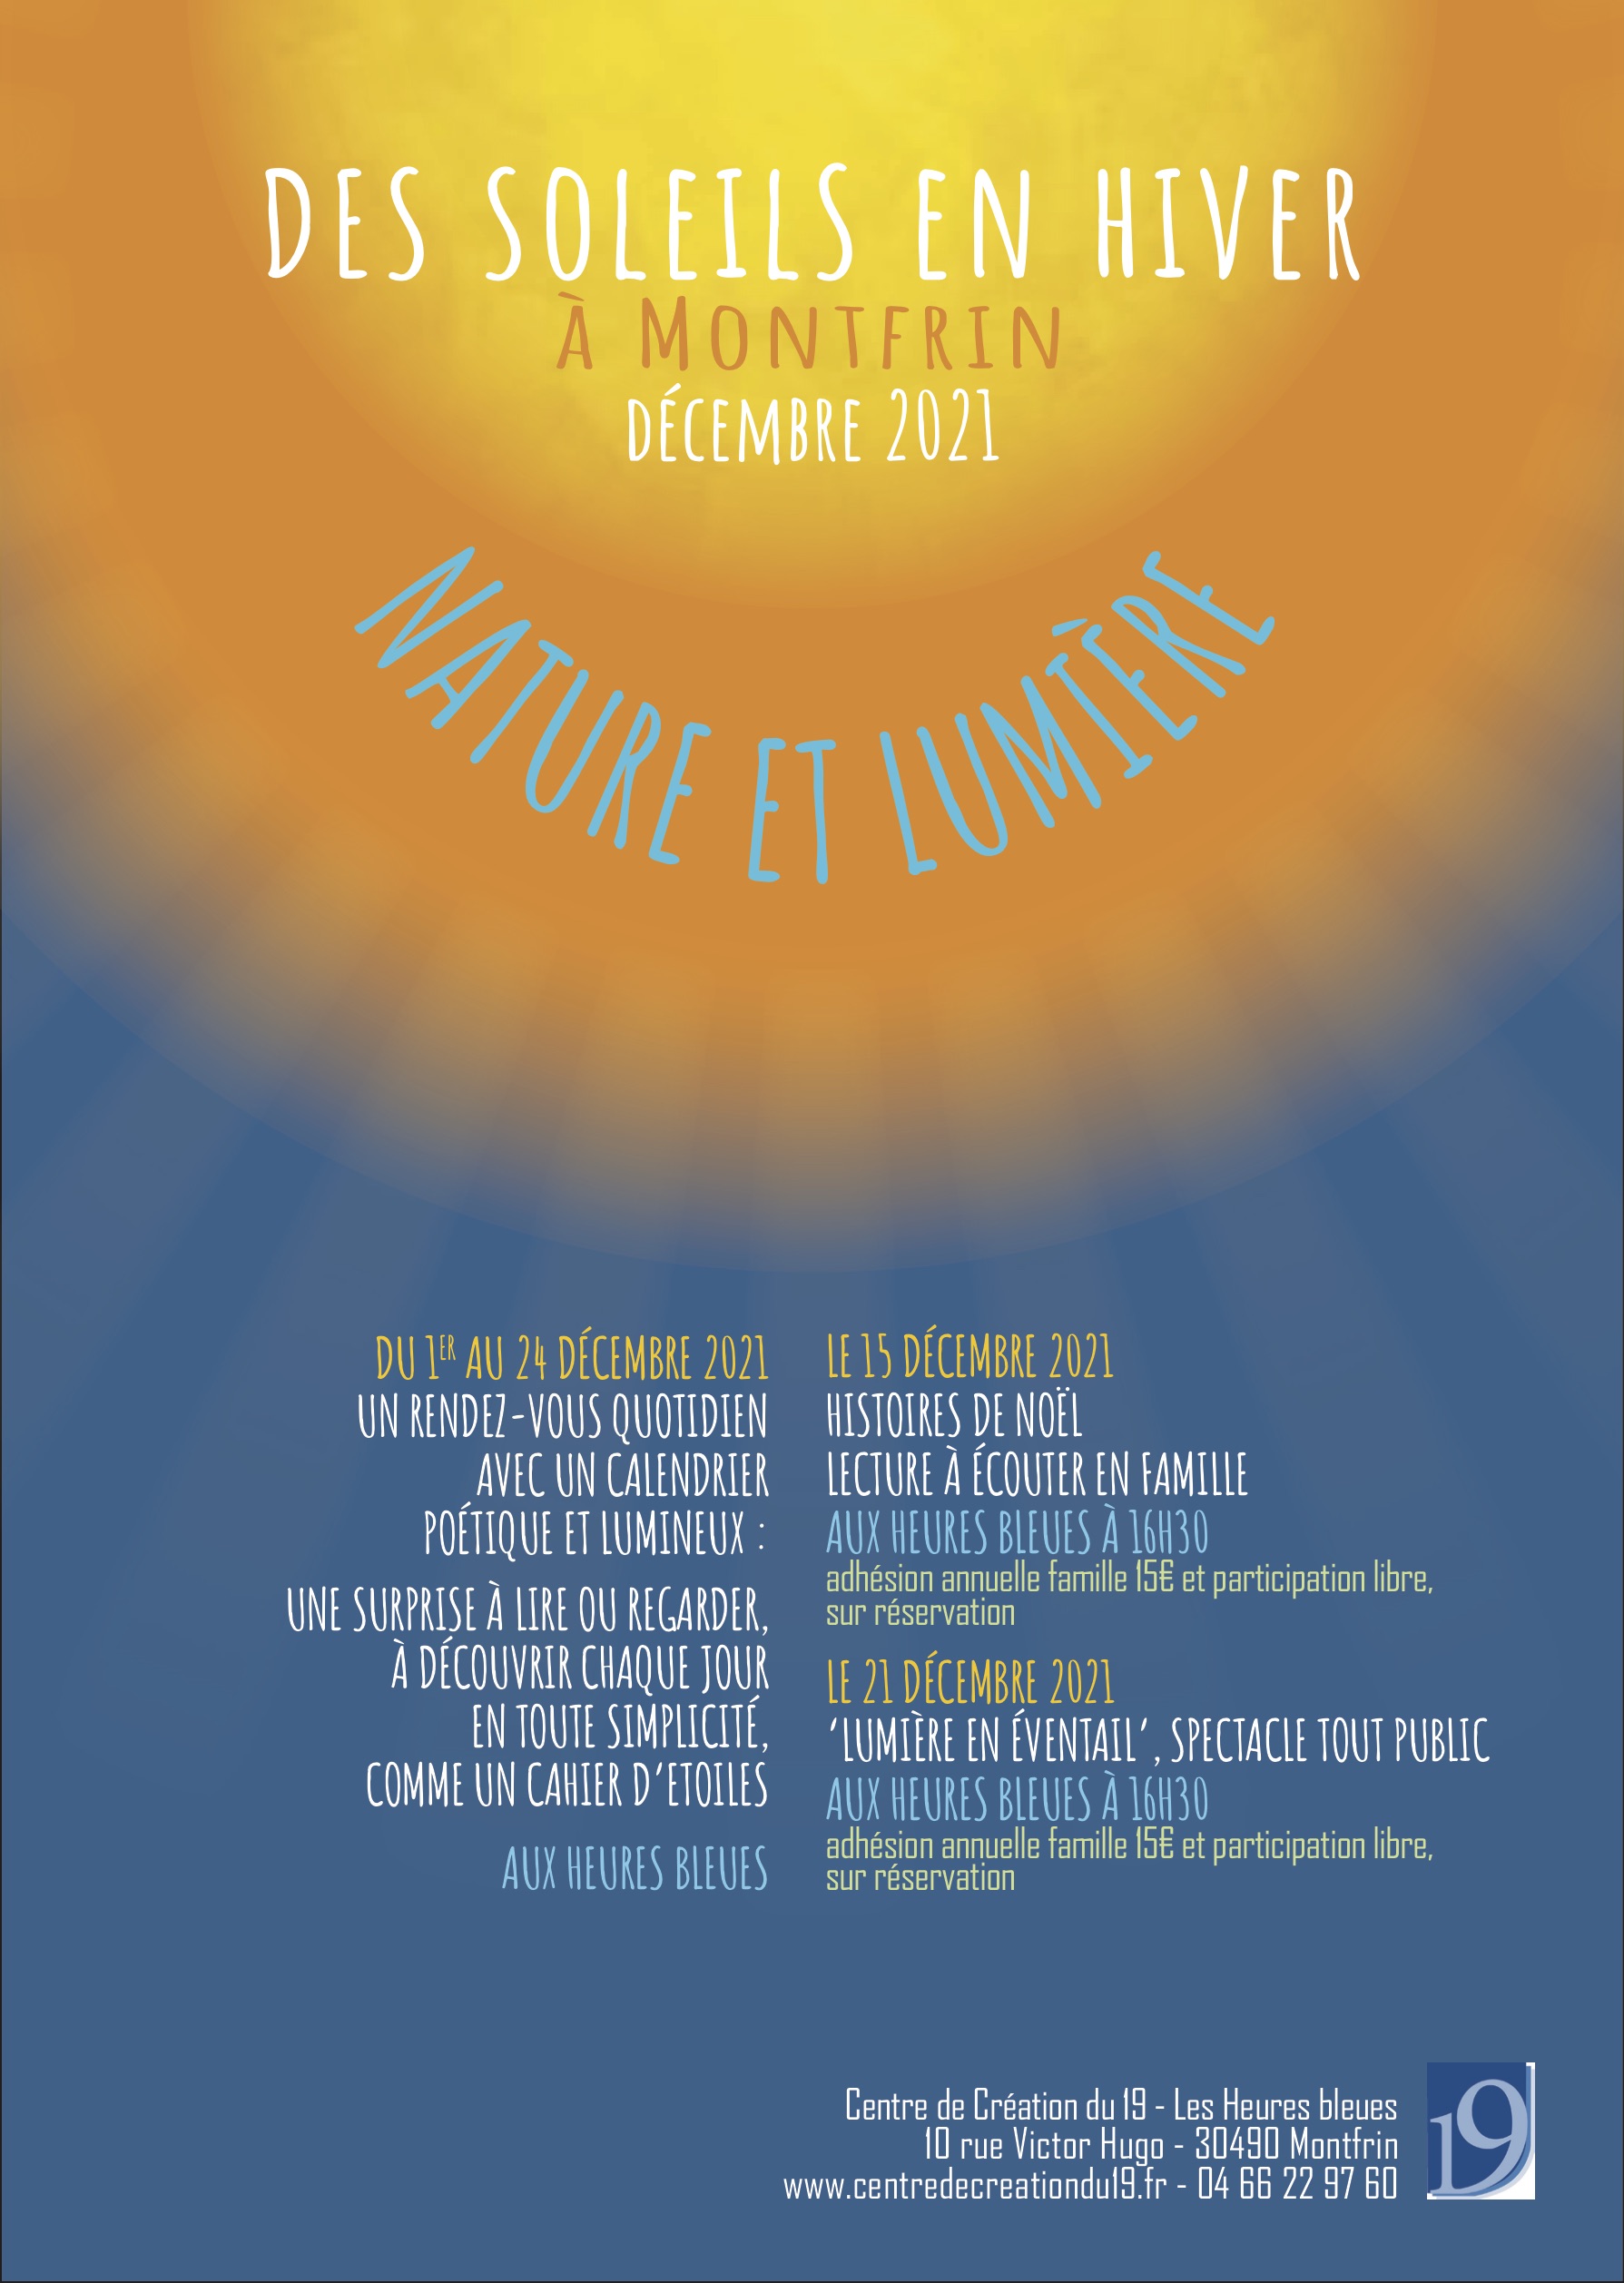 Des Soleils en hiver 2021 à Montfrin, découvrez trois temps lumineux !